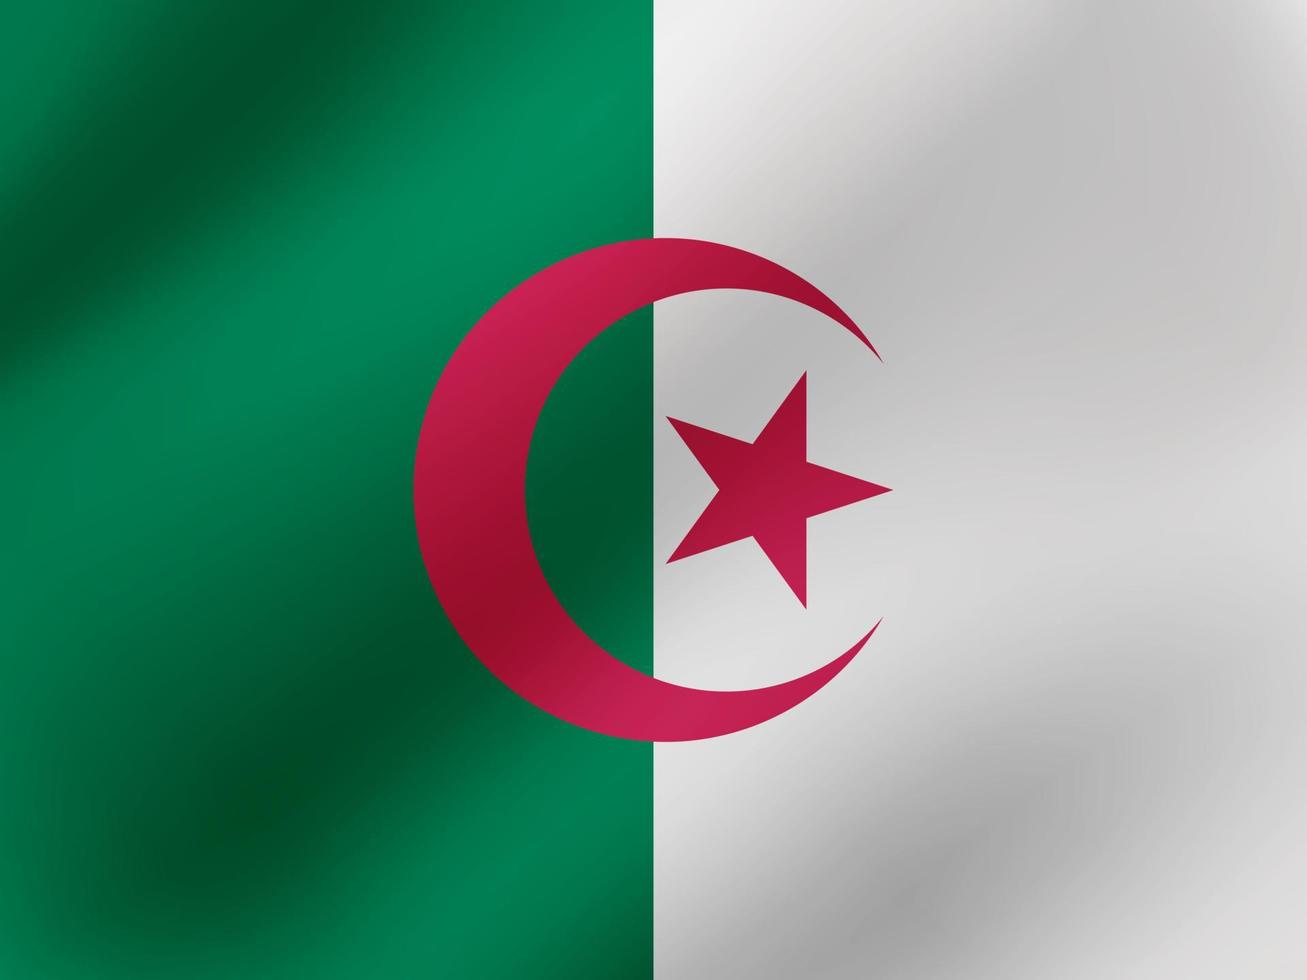 ilustração ondulada realista vetorial do design da bandeira da argélia vetor